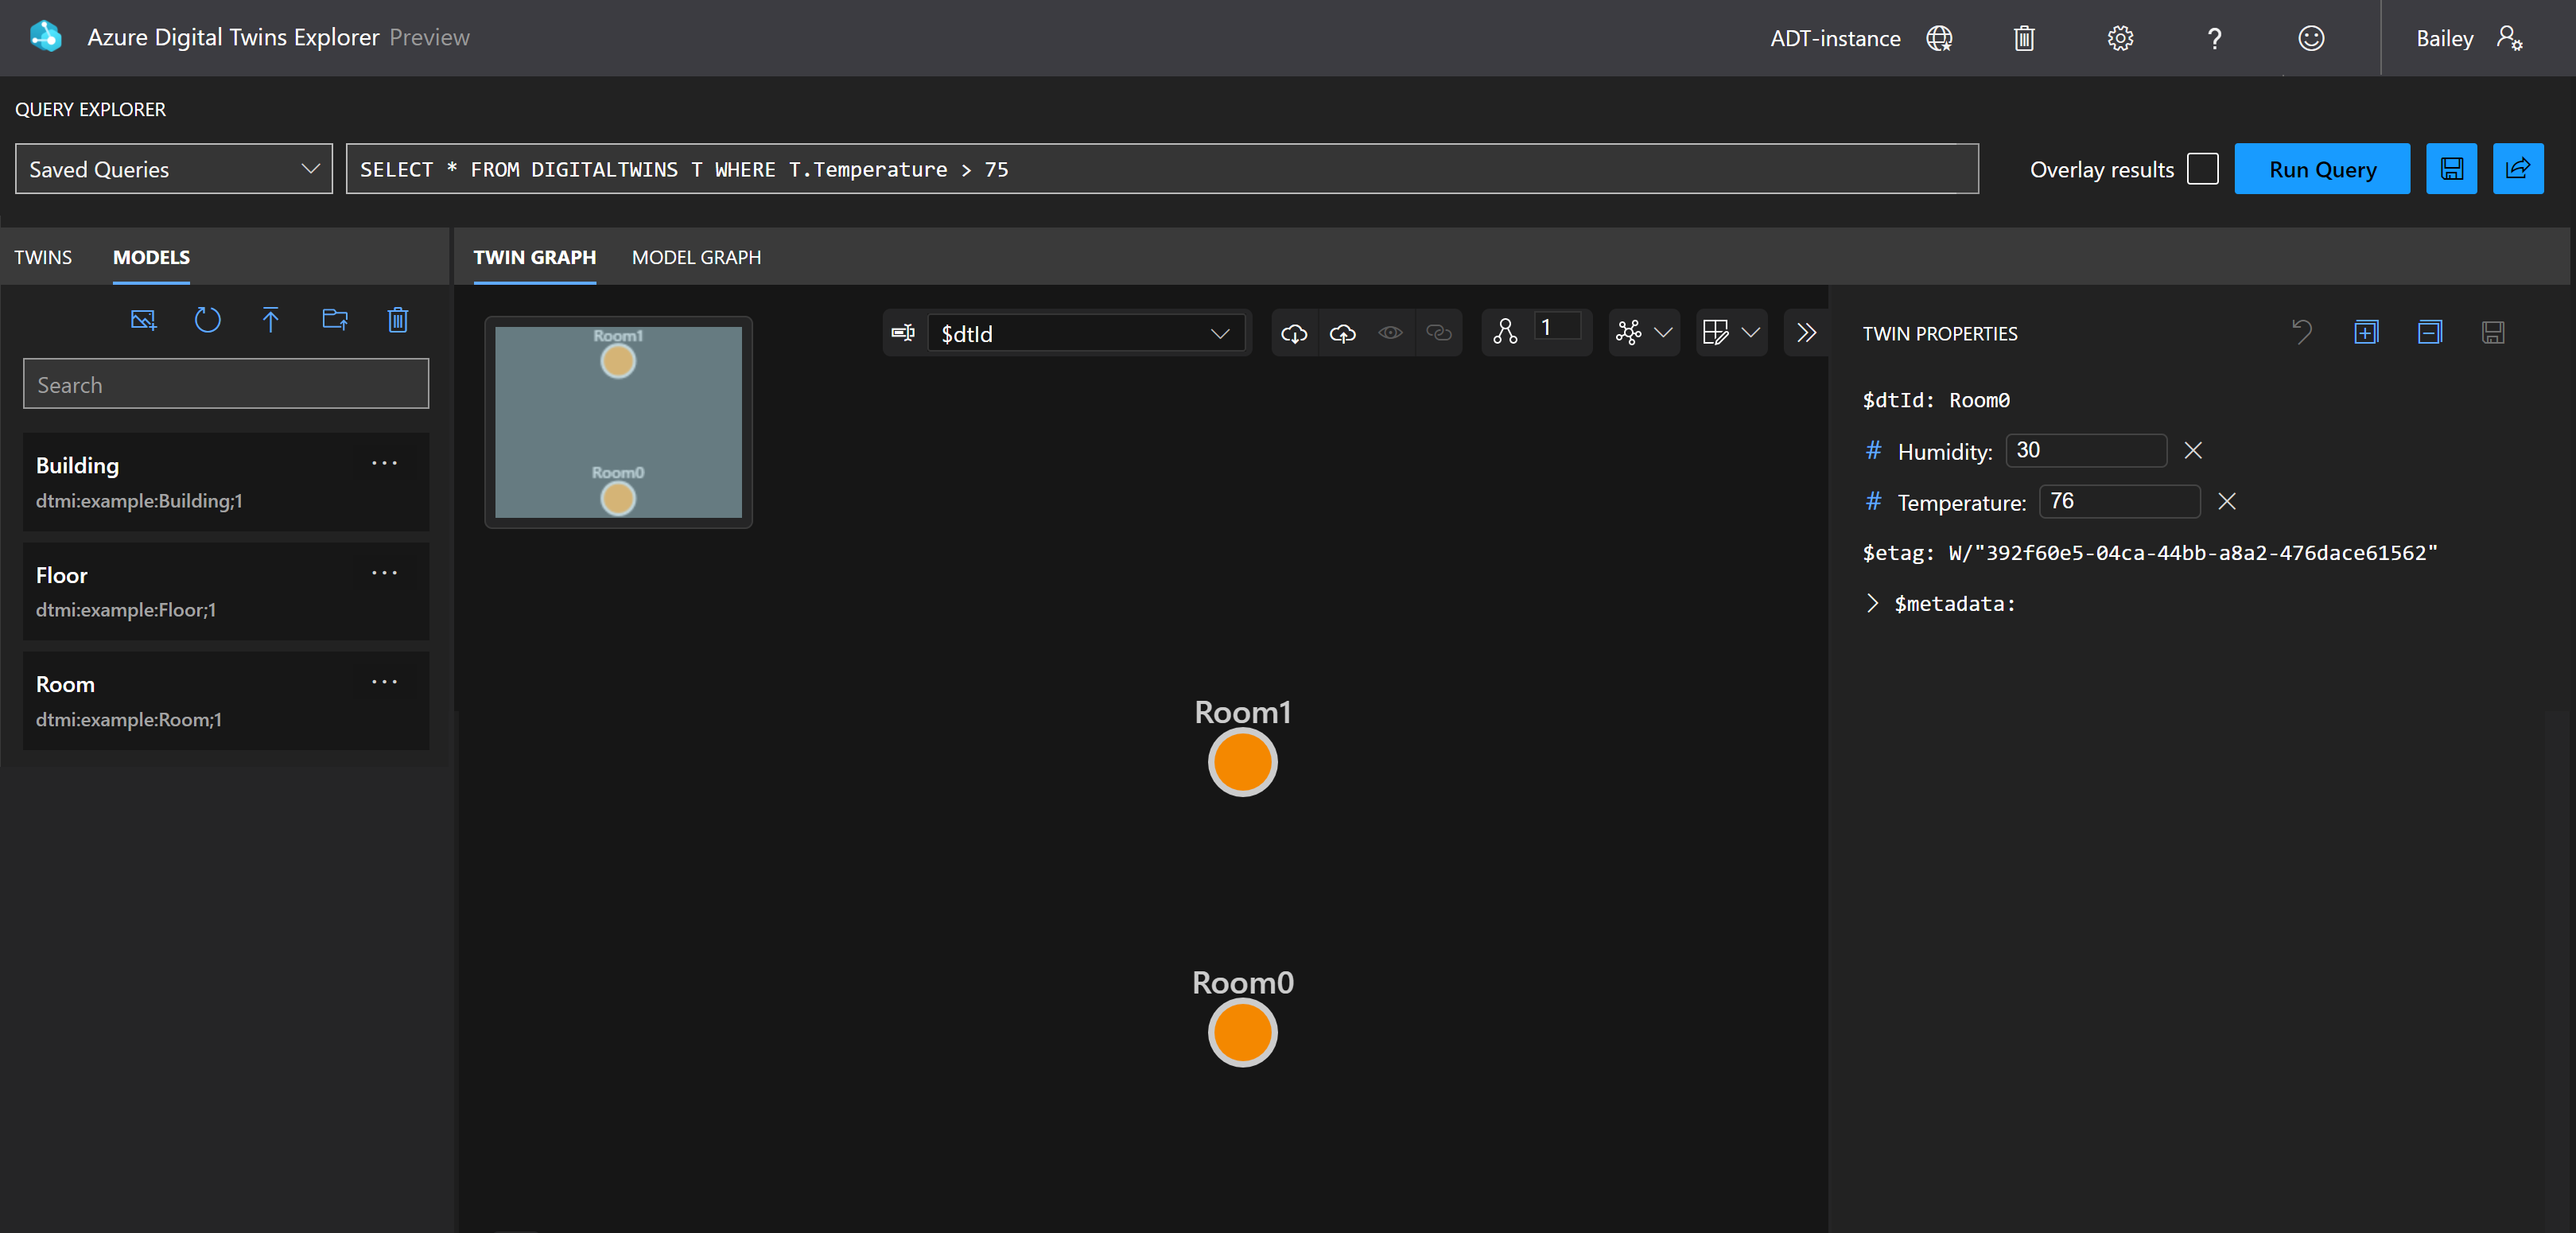 Captura de pantalla de Azure Digital Twins Explorer con los resultados de la consulta de propiedades, que muestra Room0 y Room1.